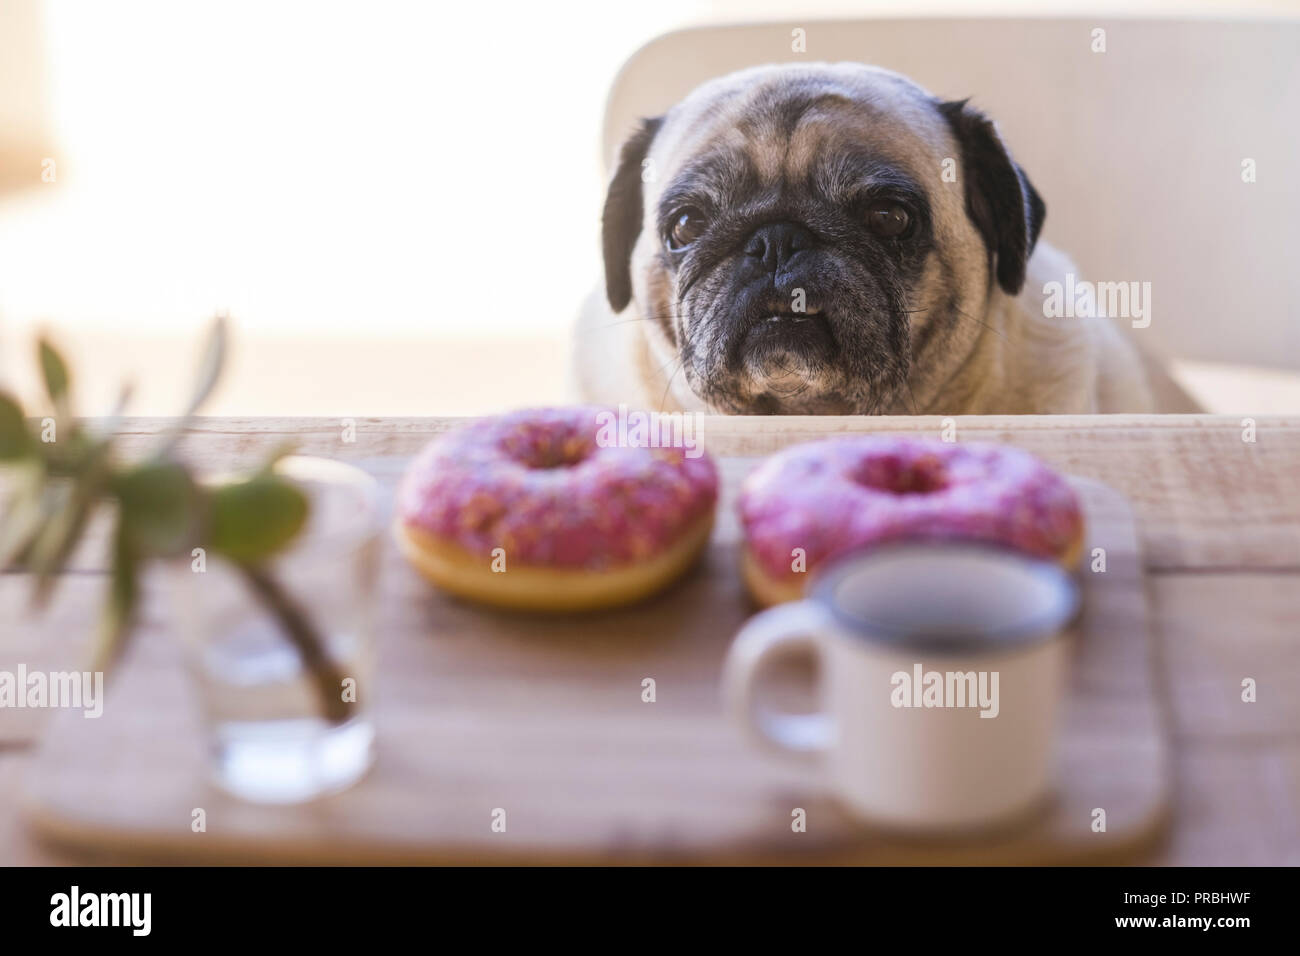 Traurig, lustig Ausdruck mops Hund auf dem Tisch mit süßen schöne farbige Frühstück vor mit zwei Zucker Donuts und Kaffee. Aufwachen am Morgen Stockfoto